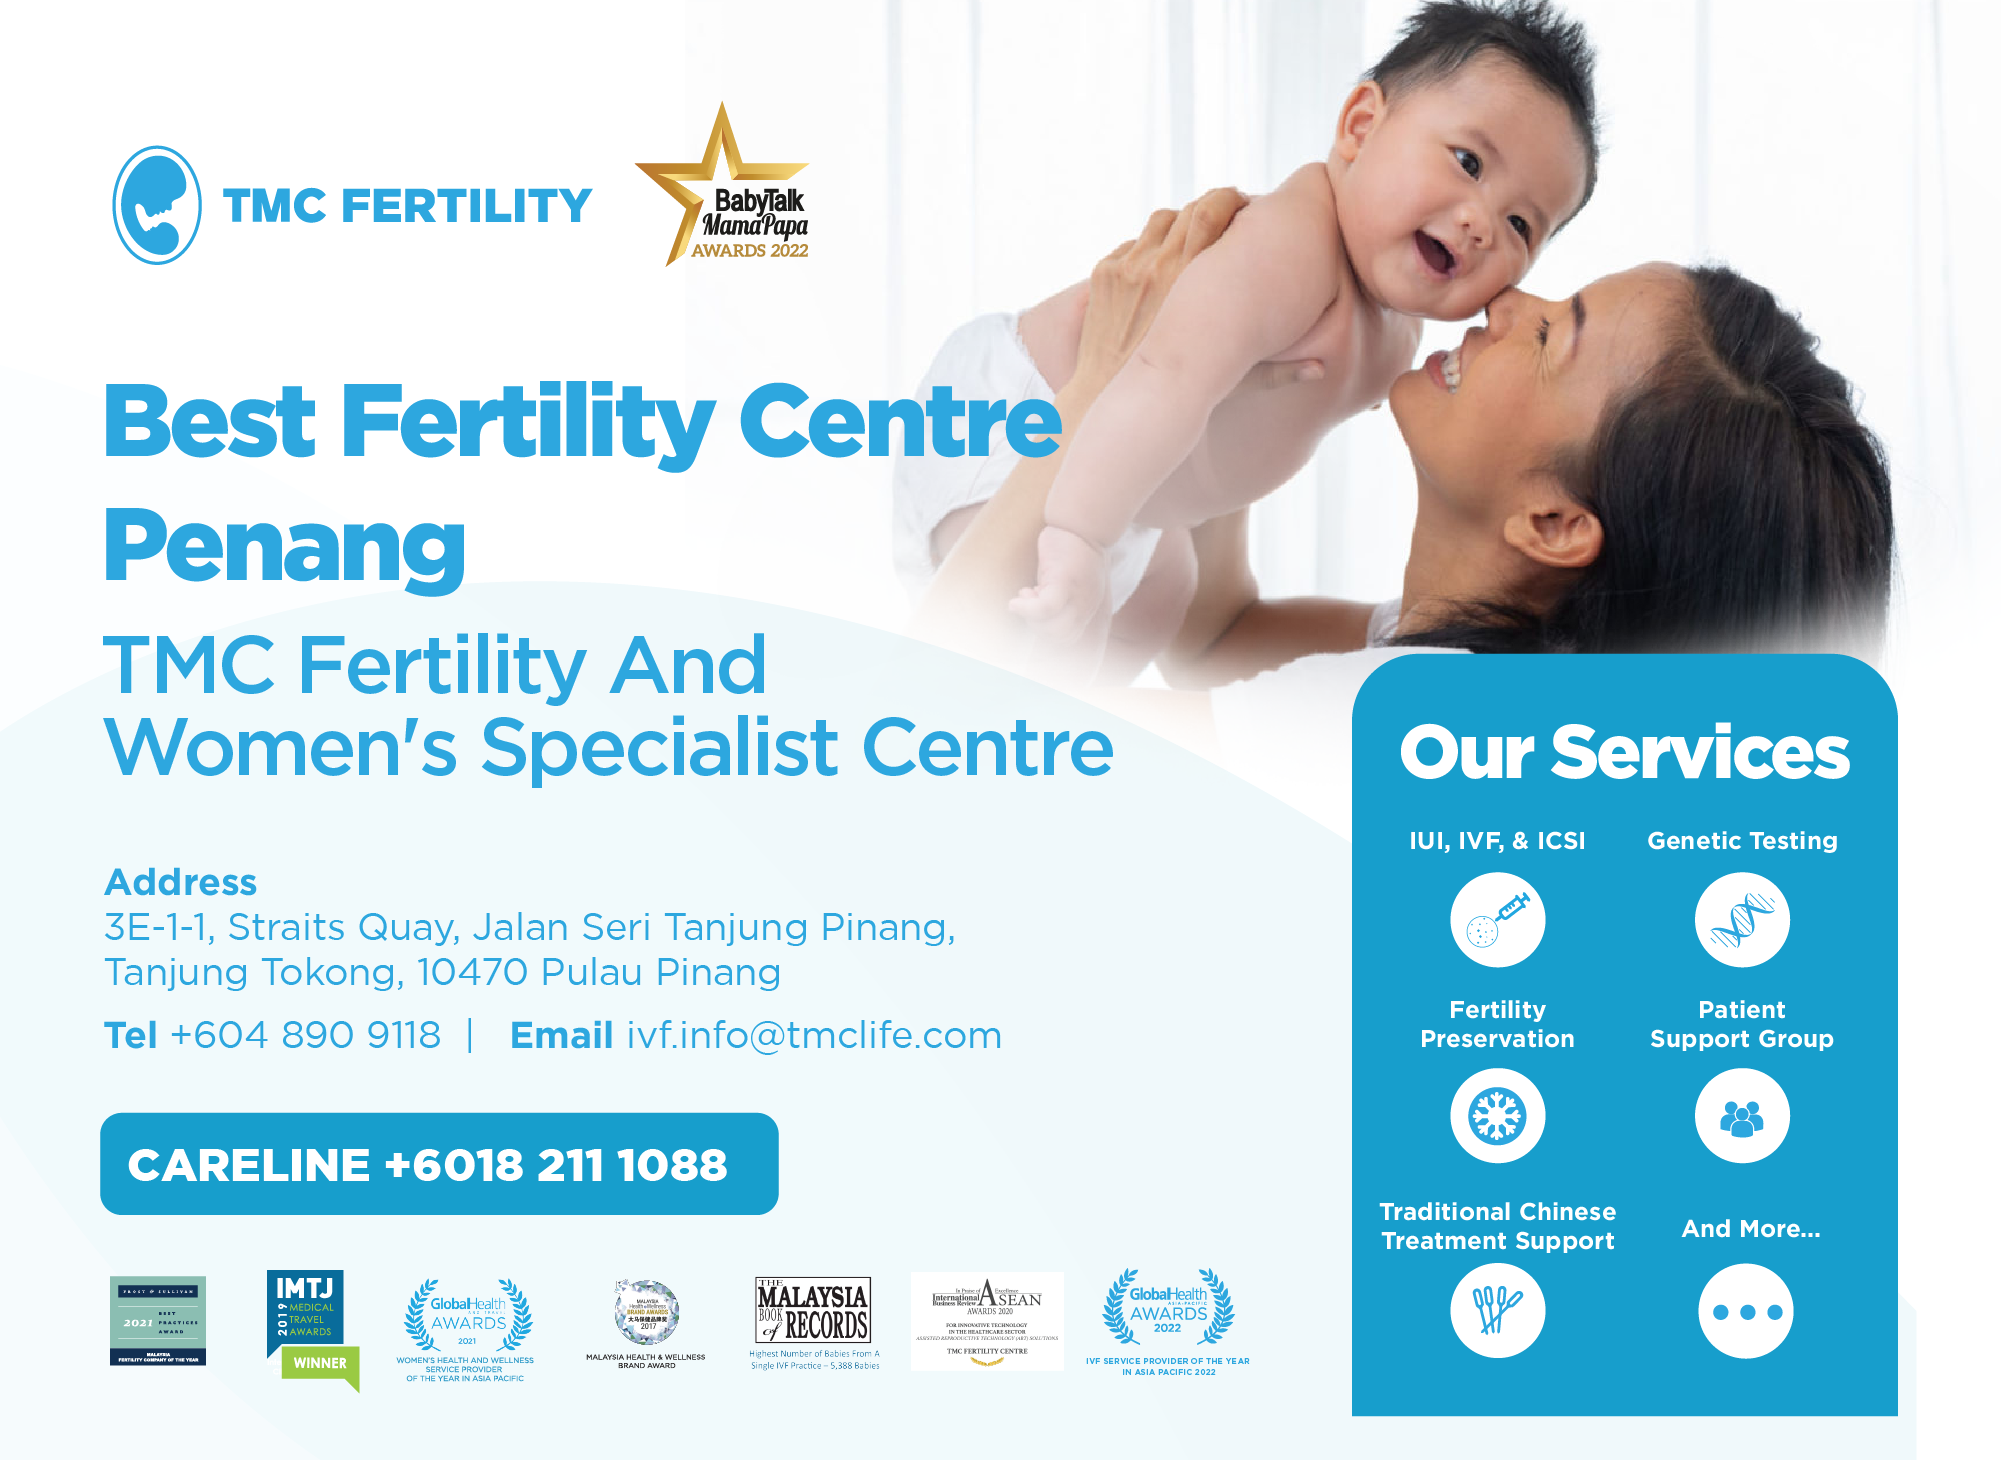 TMC Fertility & Women’s Specialist Centre – Penang